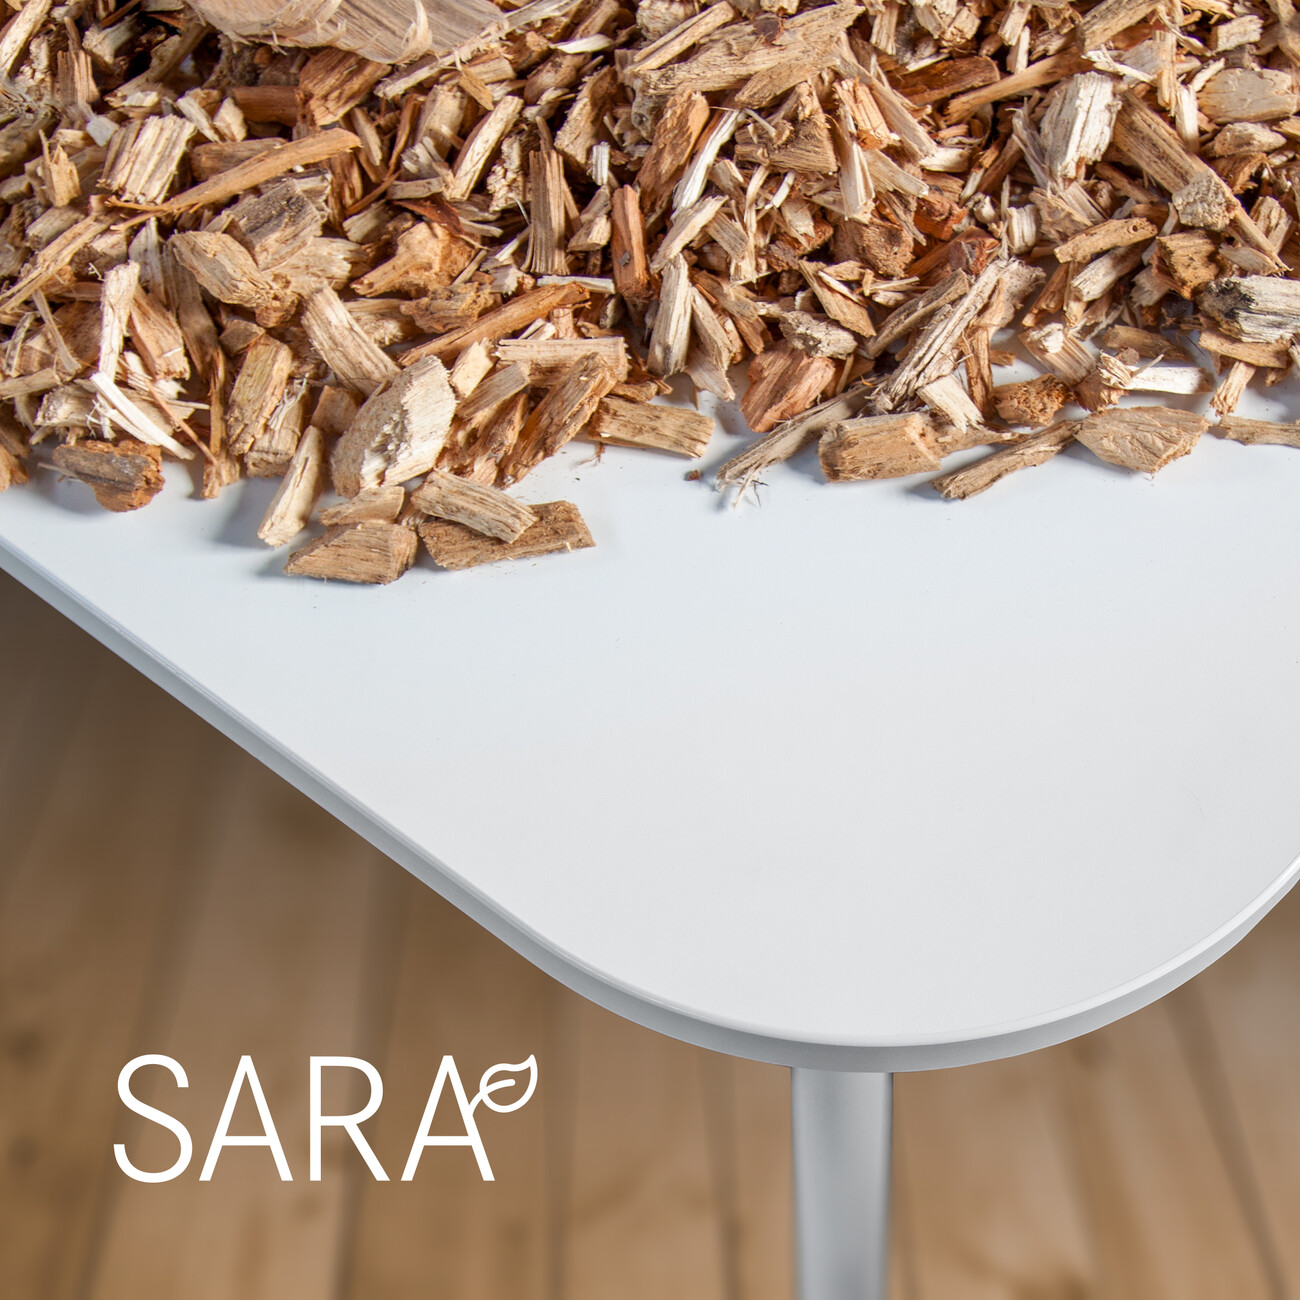 Für SARA wird Altholz (klassifiziert nach EAV (Europäischer Abfallkatalog) wie z. B. alte Möbel, Paletten, Bauholz, etc.) zerspant und zu neuen, hochwertigen Möbelbauplatten verarbeitet. Anhaftende Materialien, wie zum Beispiel Glas, Stahl oder Aluminium, werden im Aufarbeitungsprozess sortenrein getrennt und dem Recycling zugeführt. Tischplatten und Schränke werden so am Ende ihrer Gebrauchsdauer wieder zum Rohstoff neuer Büromöbel. Mit der SARA Platte in den WINI Möbeln wird die Kohlenstoffbindung im Material um Jahre bis Jahrzehnte verlängert.